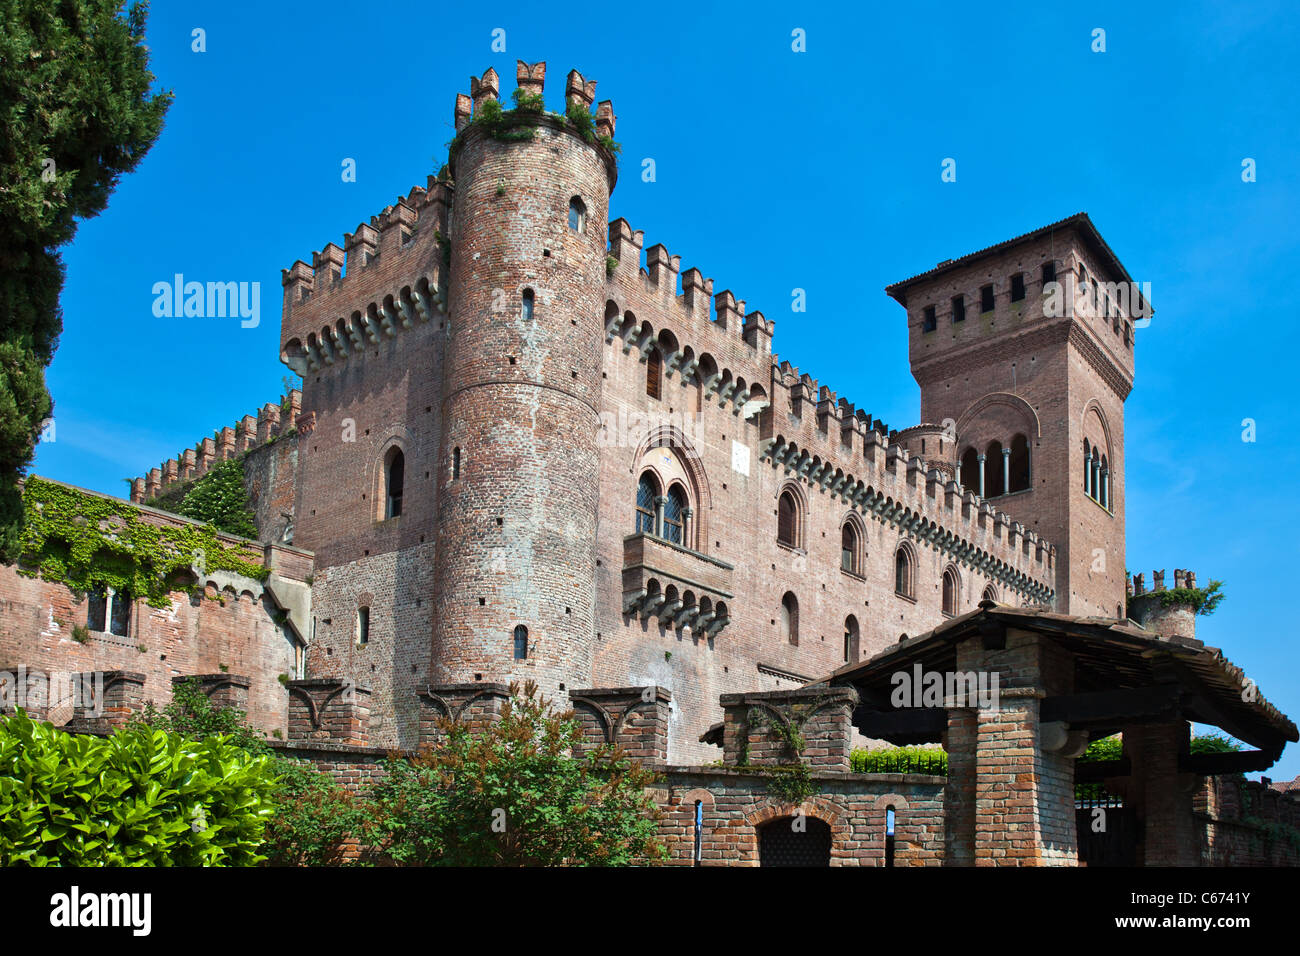 Italy, Piedmont, Monferrato, Gabiano Monferrato, the Castle Stock Photo